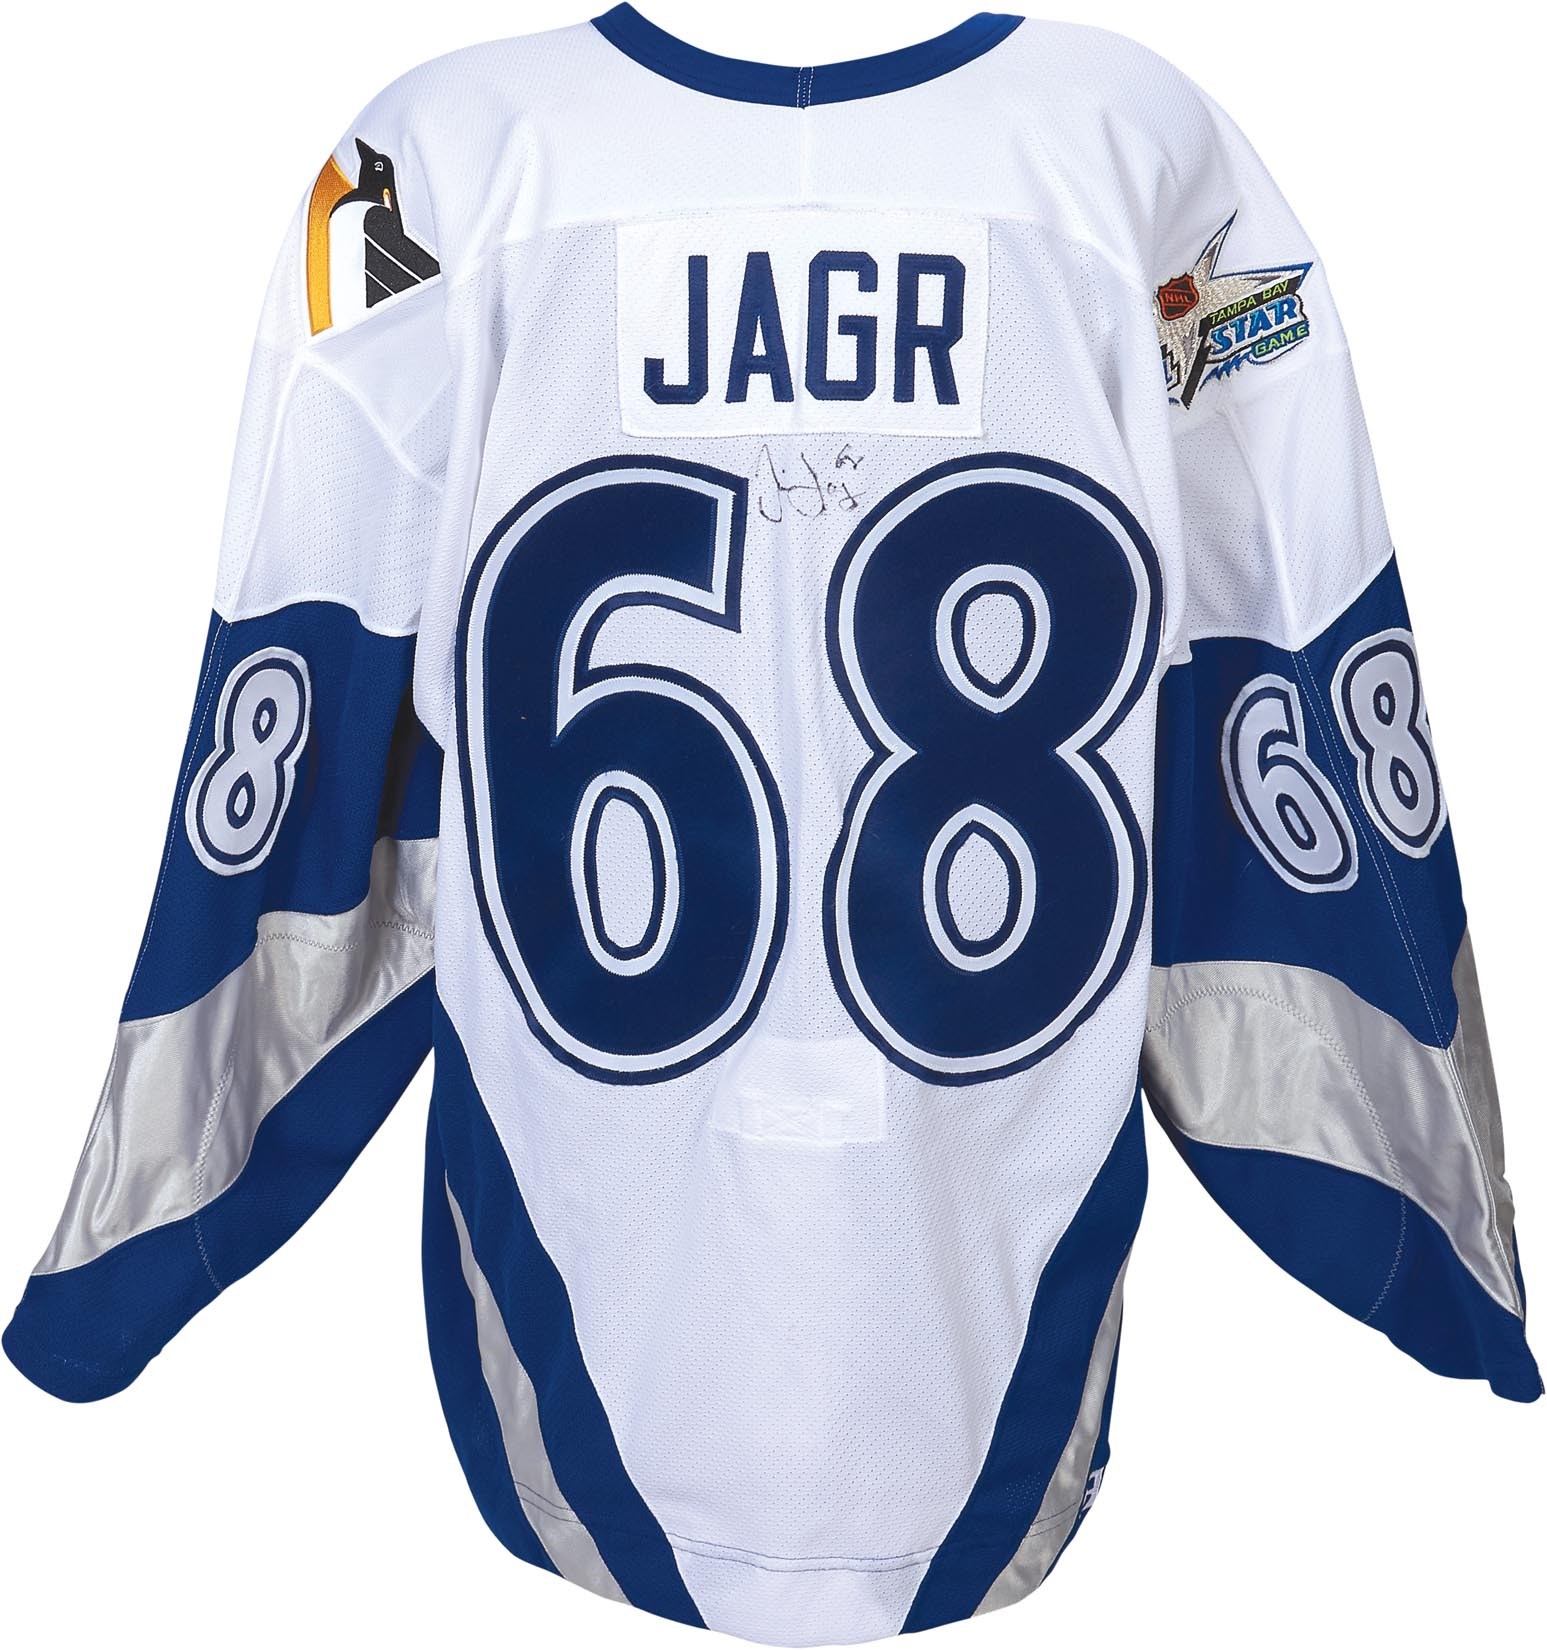 jaromir jagr game worn jersey